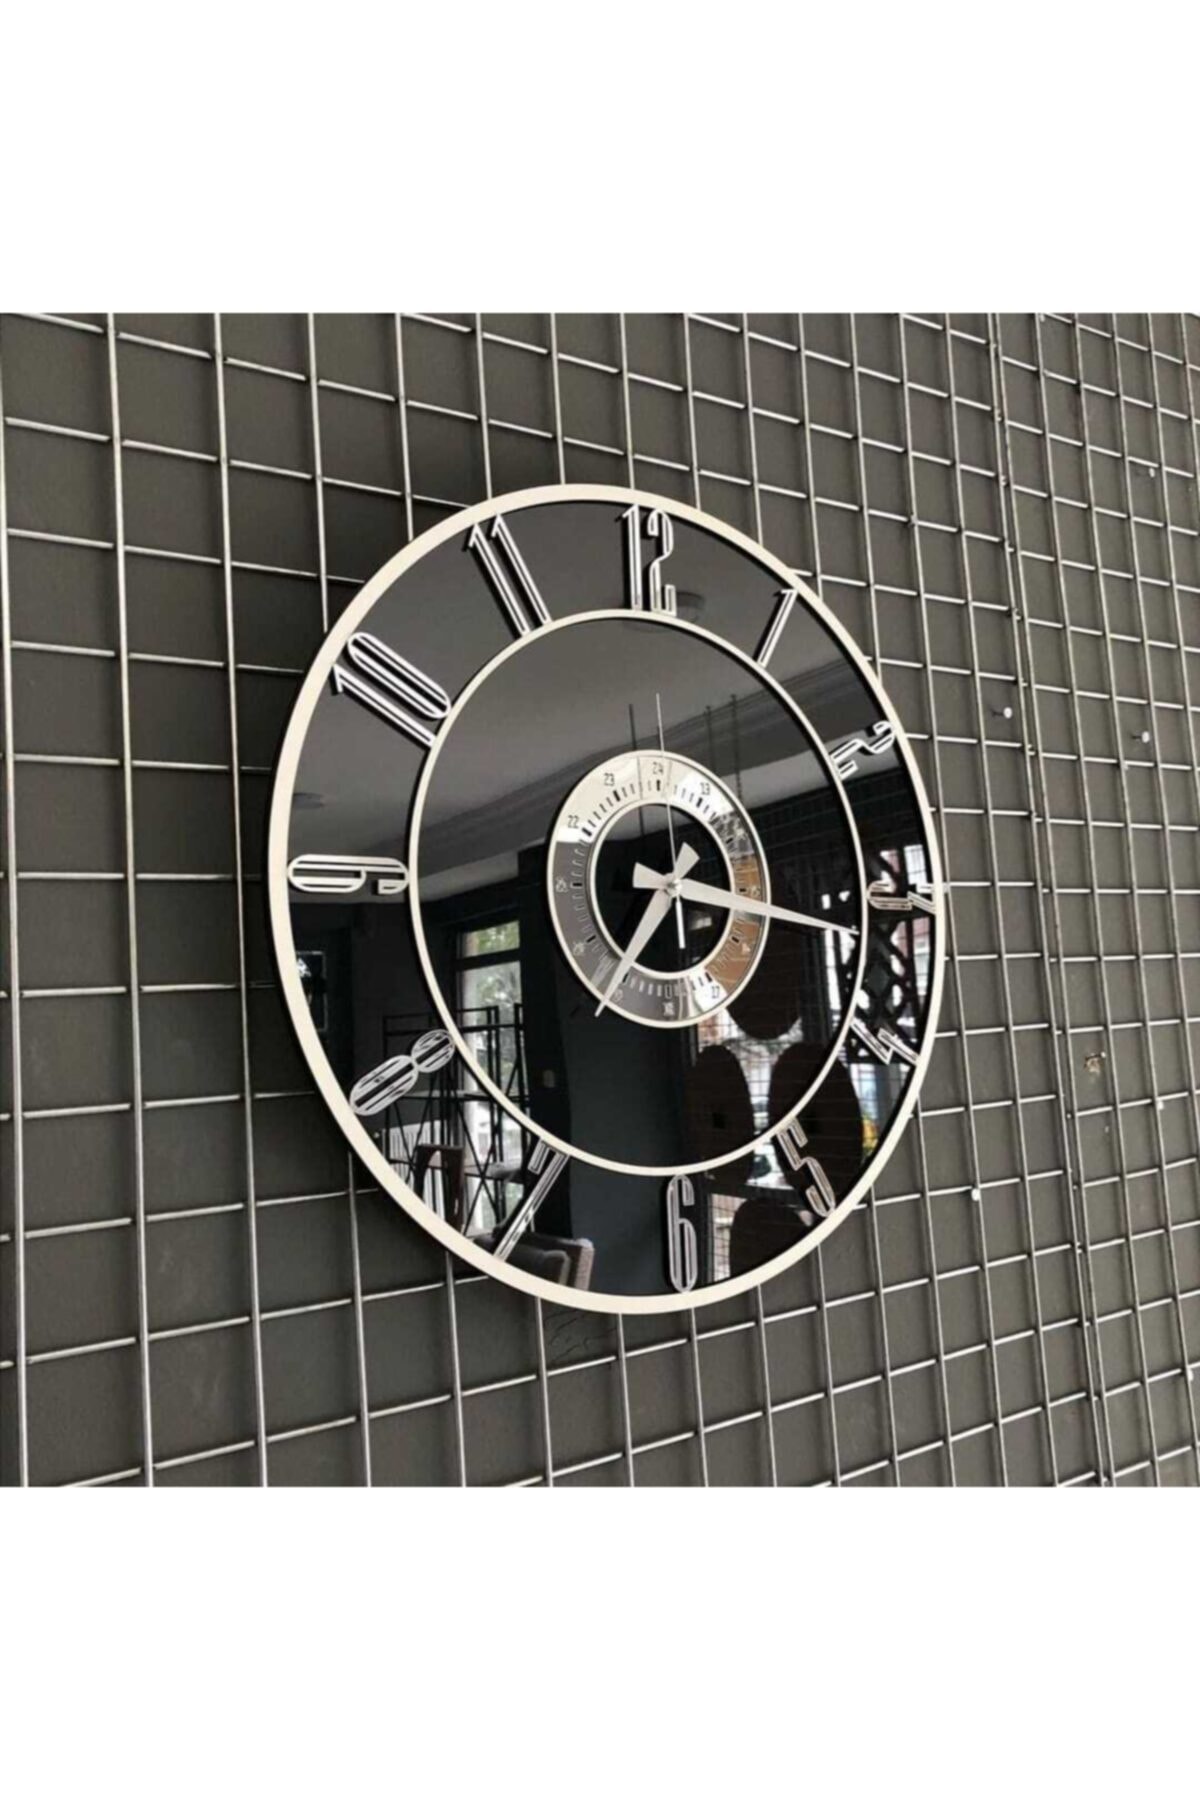 Kuzata Duvar Saati Dekoratif Büyük Aynalı Duvar Saati Özel Tasarım 60 cm